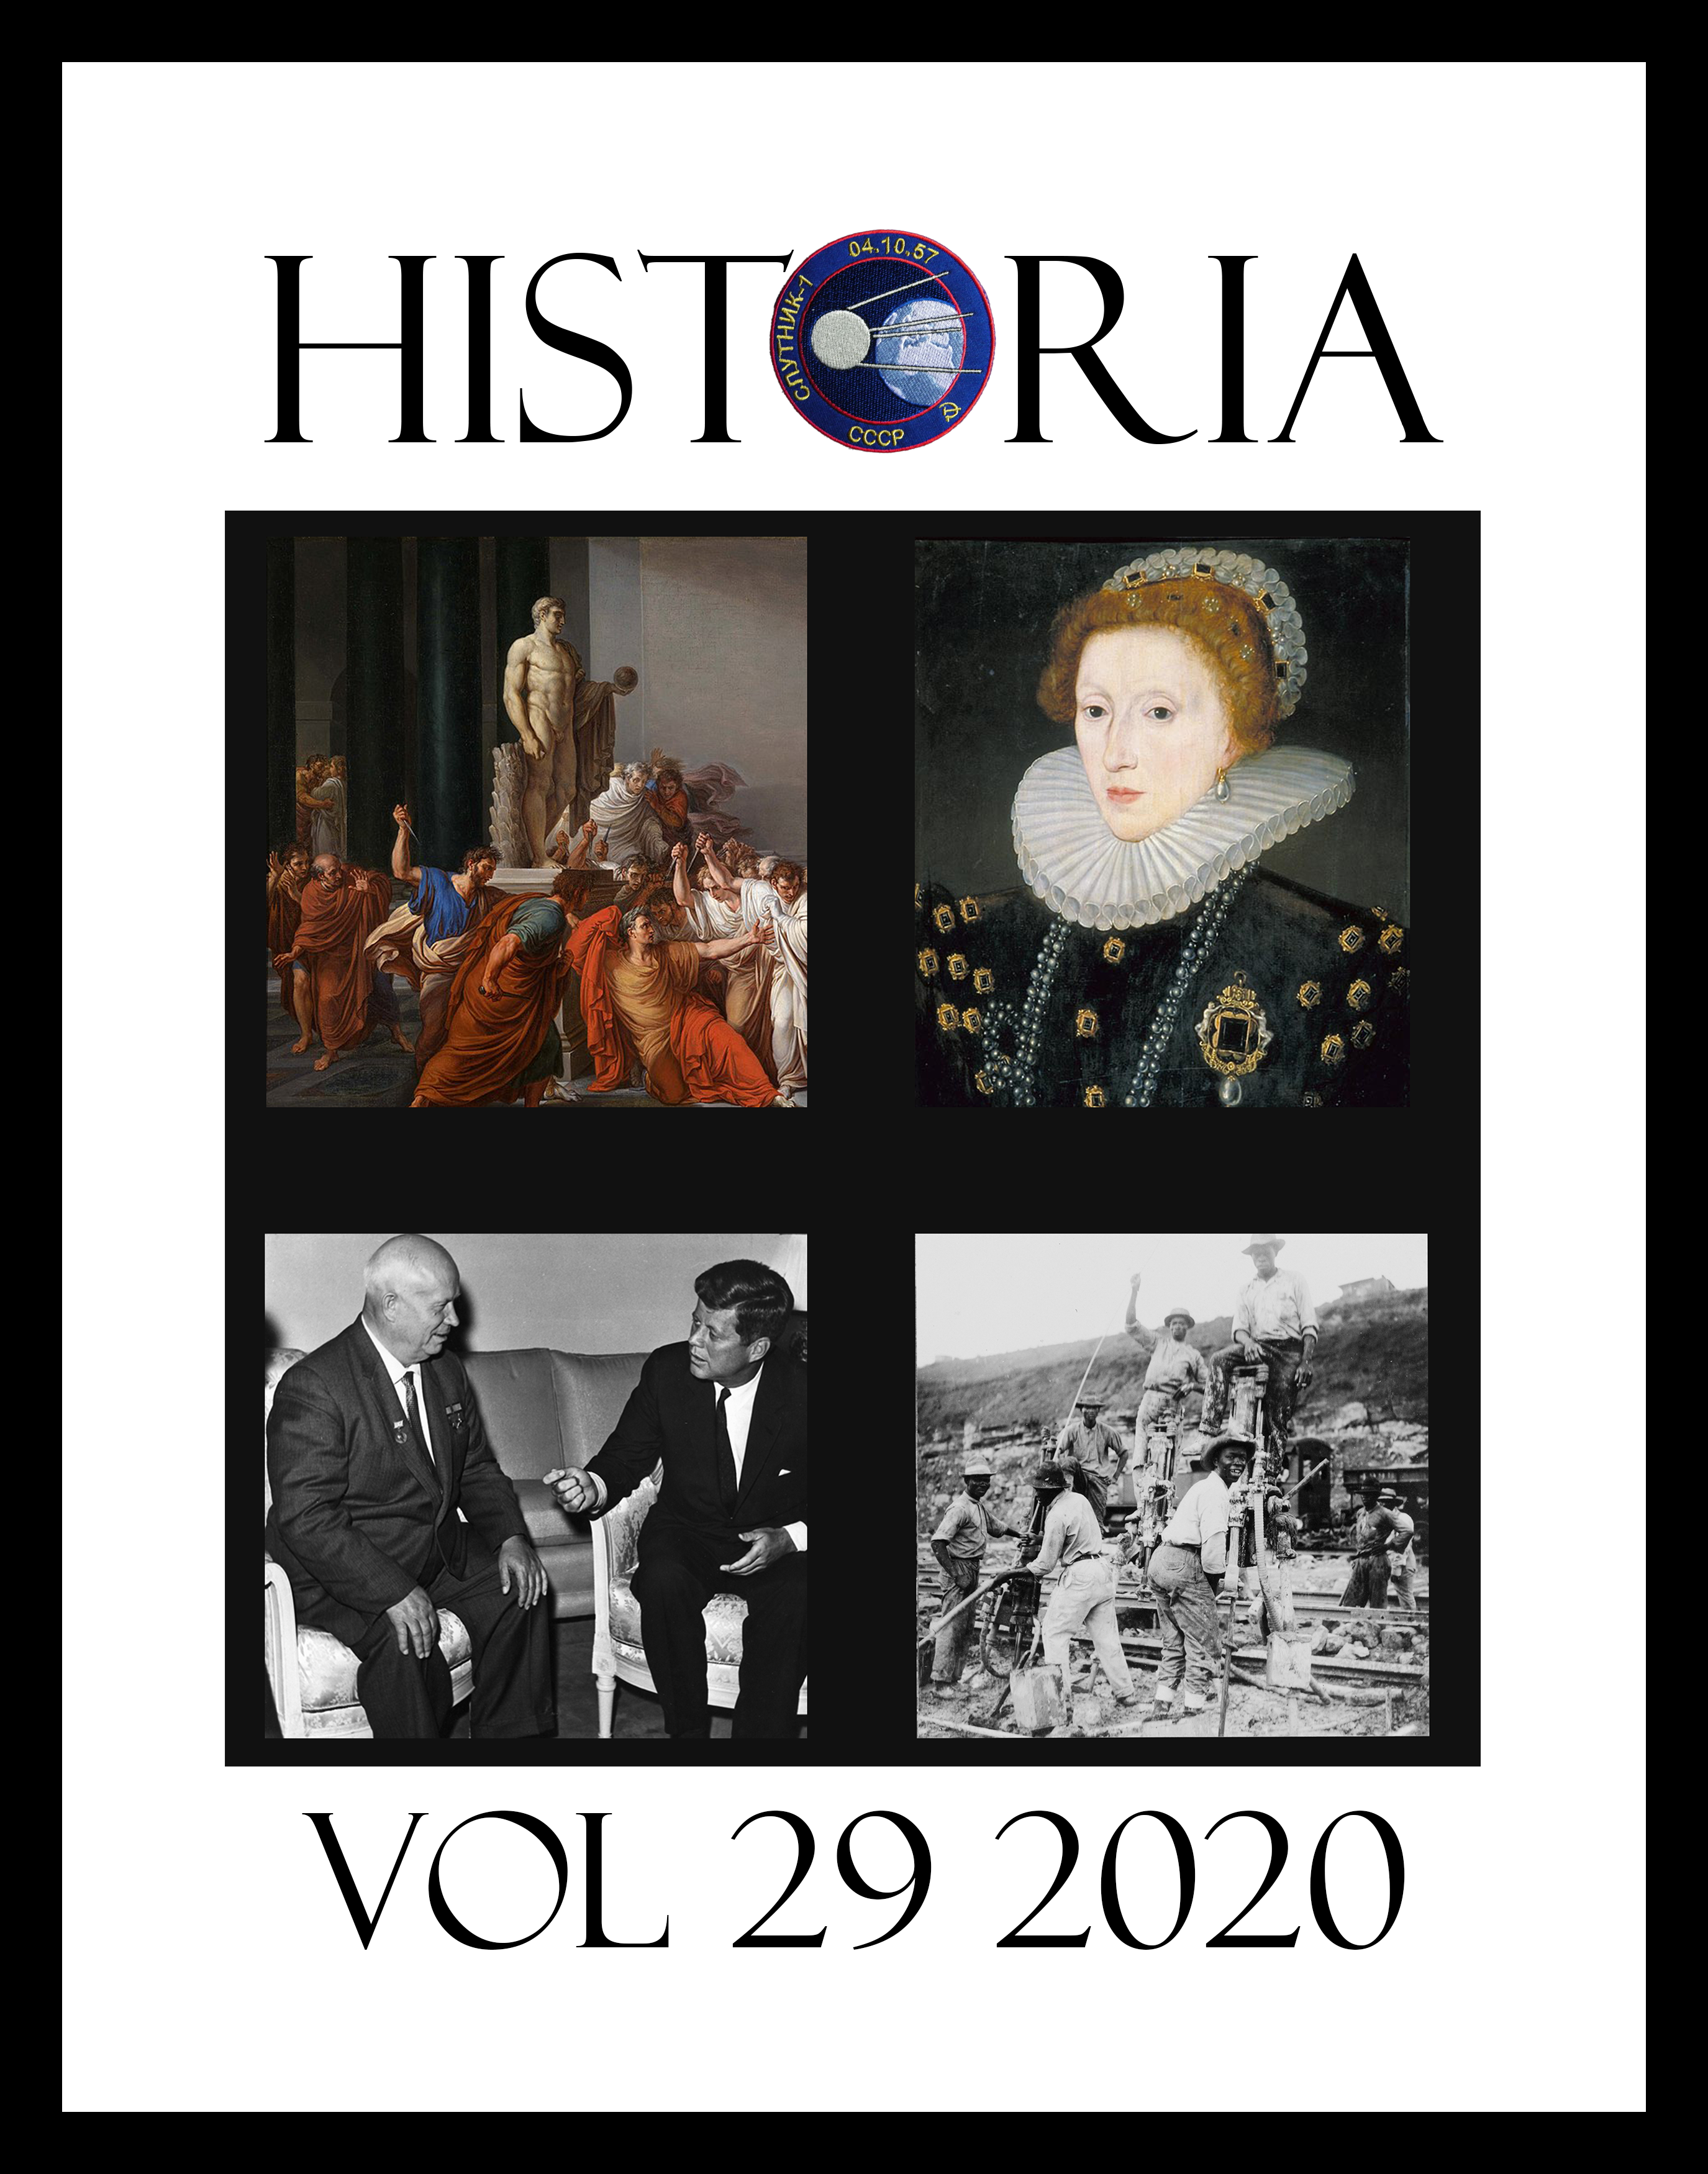 2019 Historia Picture Cover